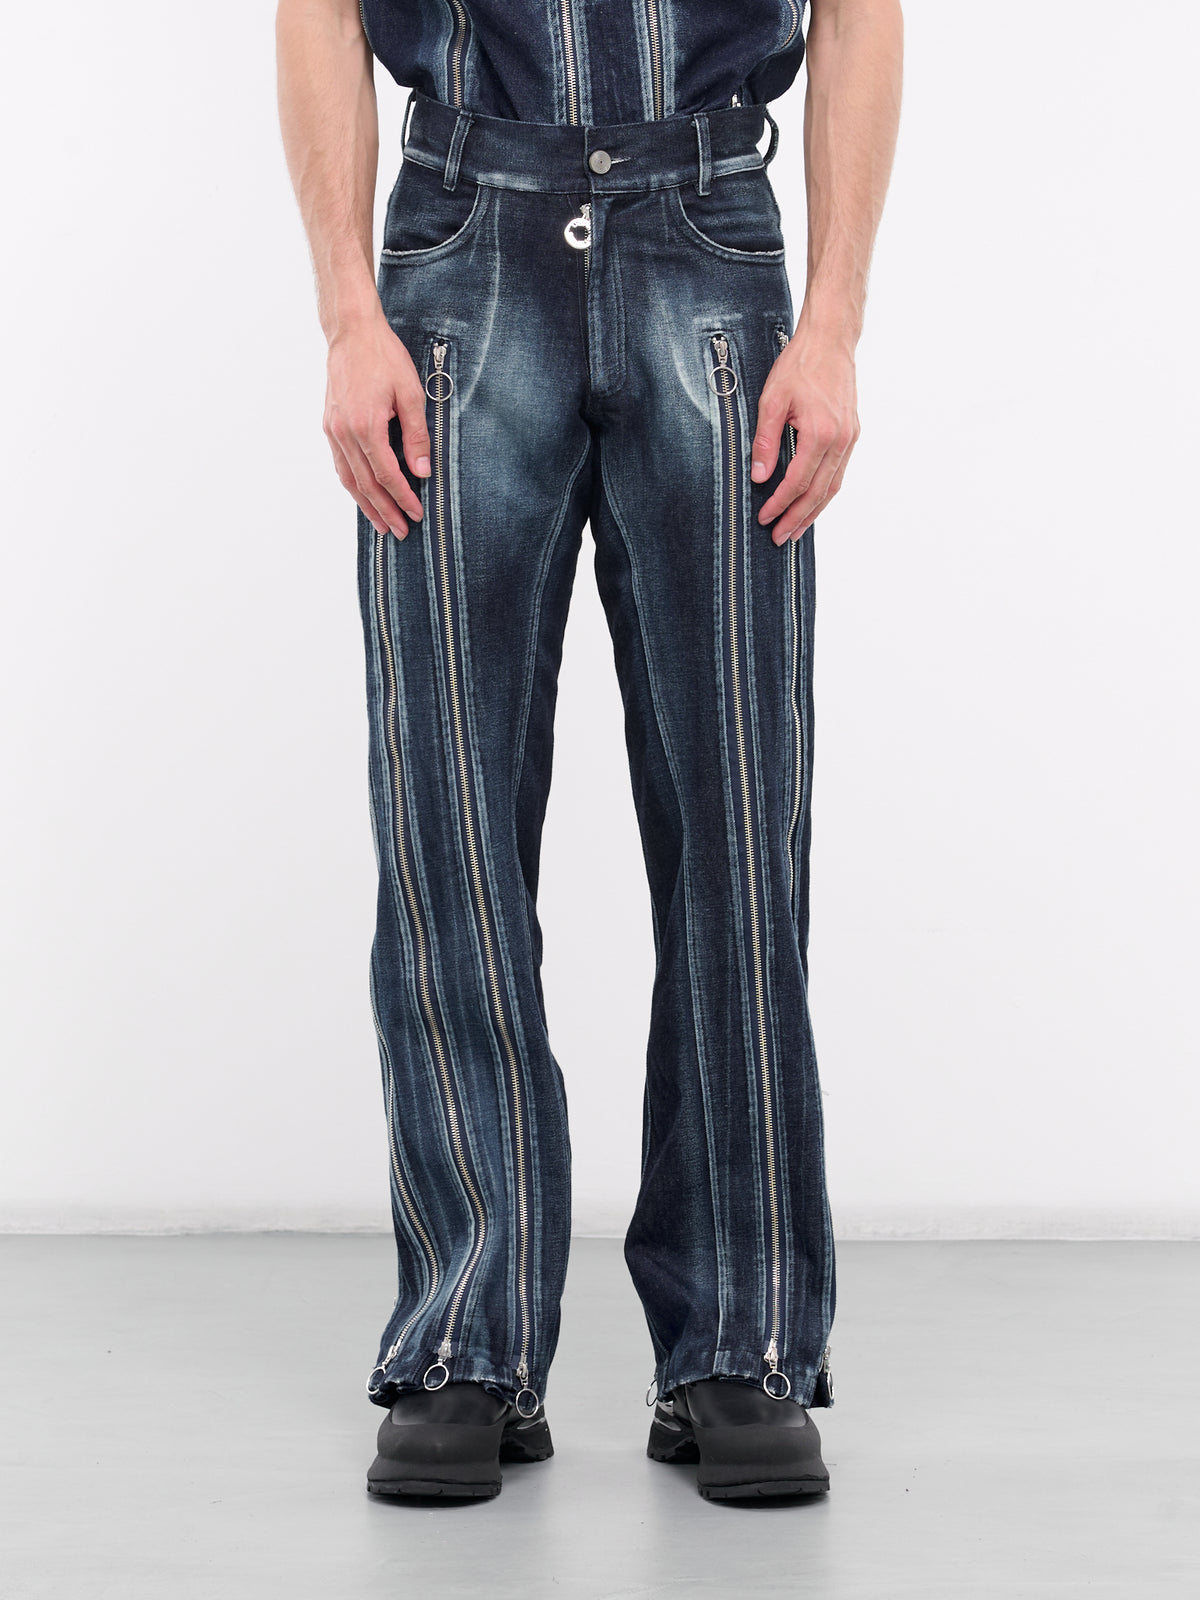 Adjustable Zip Fit Jeans (ADJZIPJEAN-INDIGO)